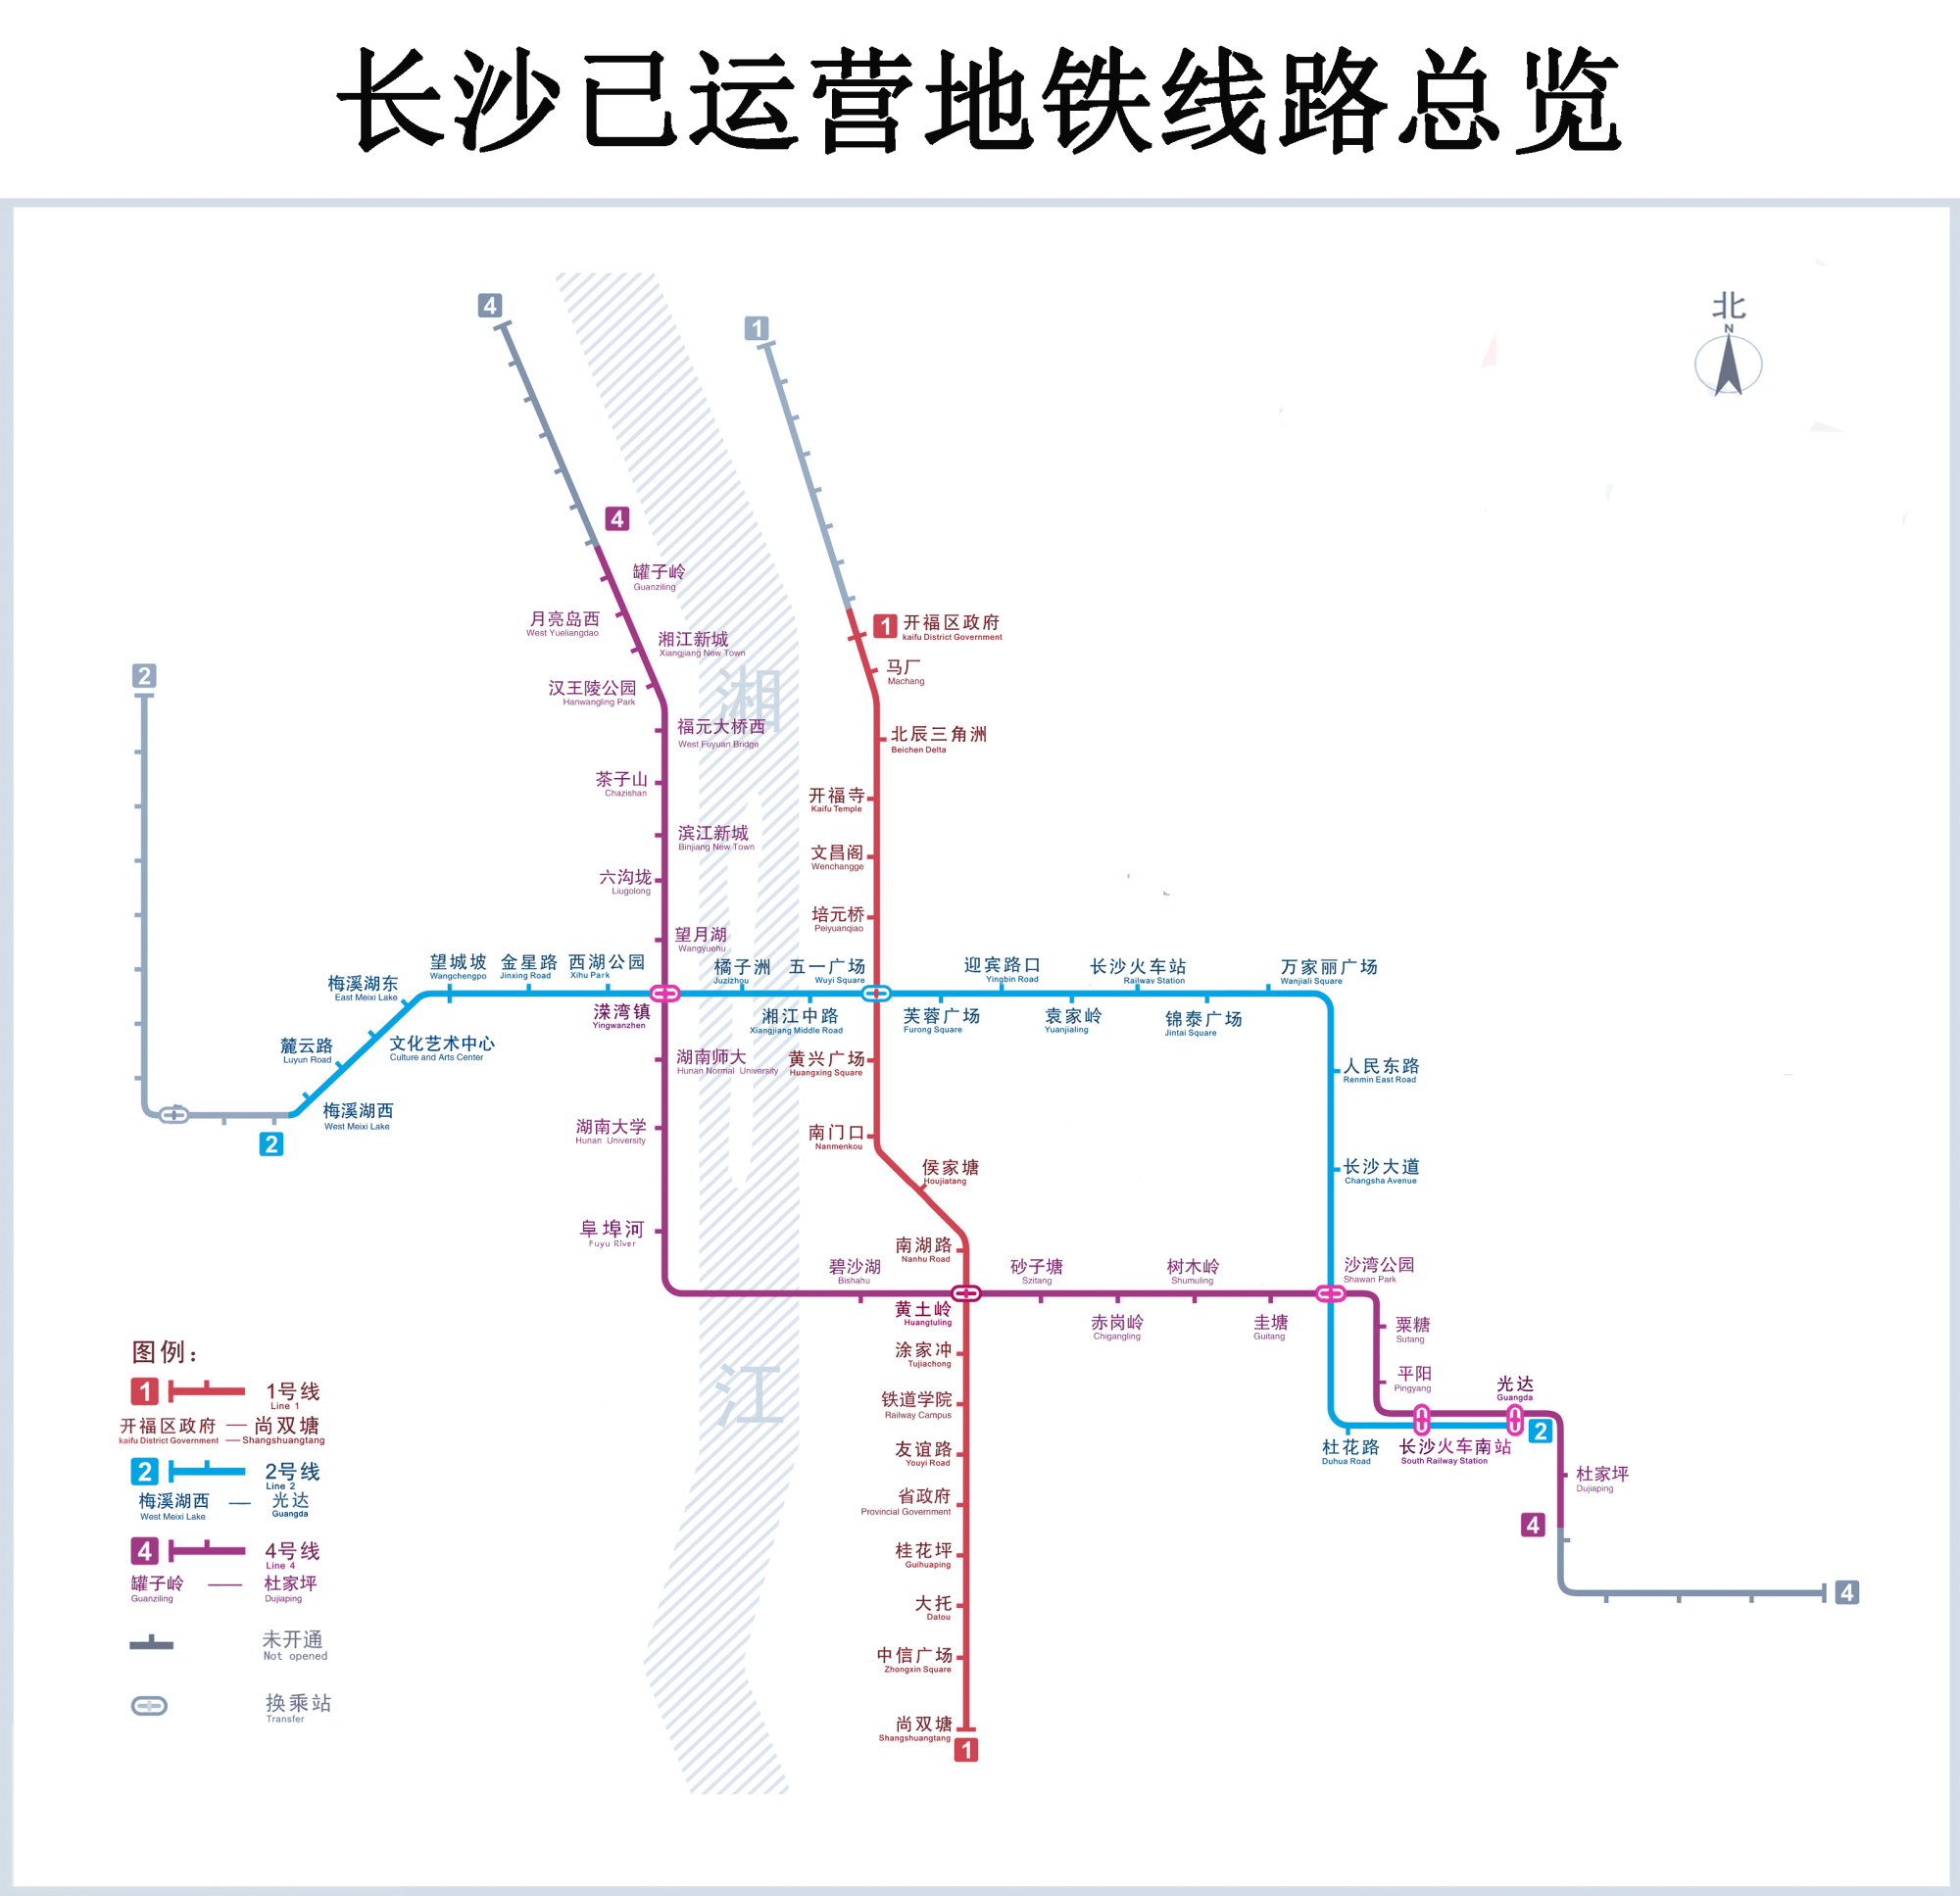 比如:3条地铁线路共串联了89个项目,其中,有36个项目能无缝连接地铁